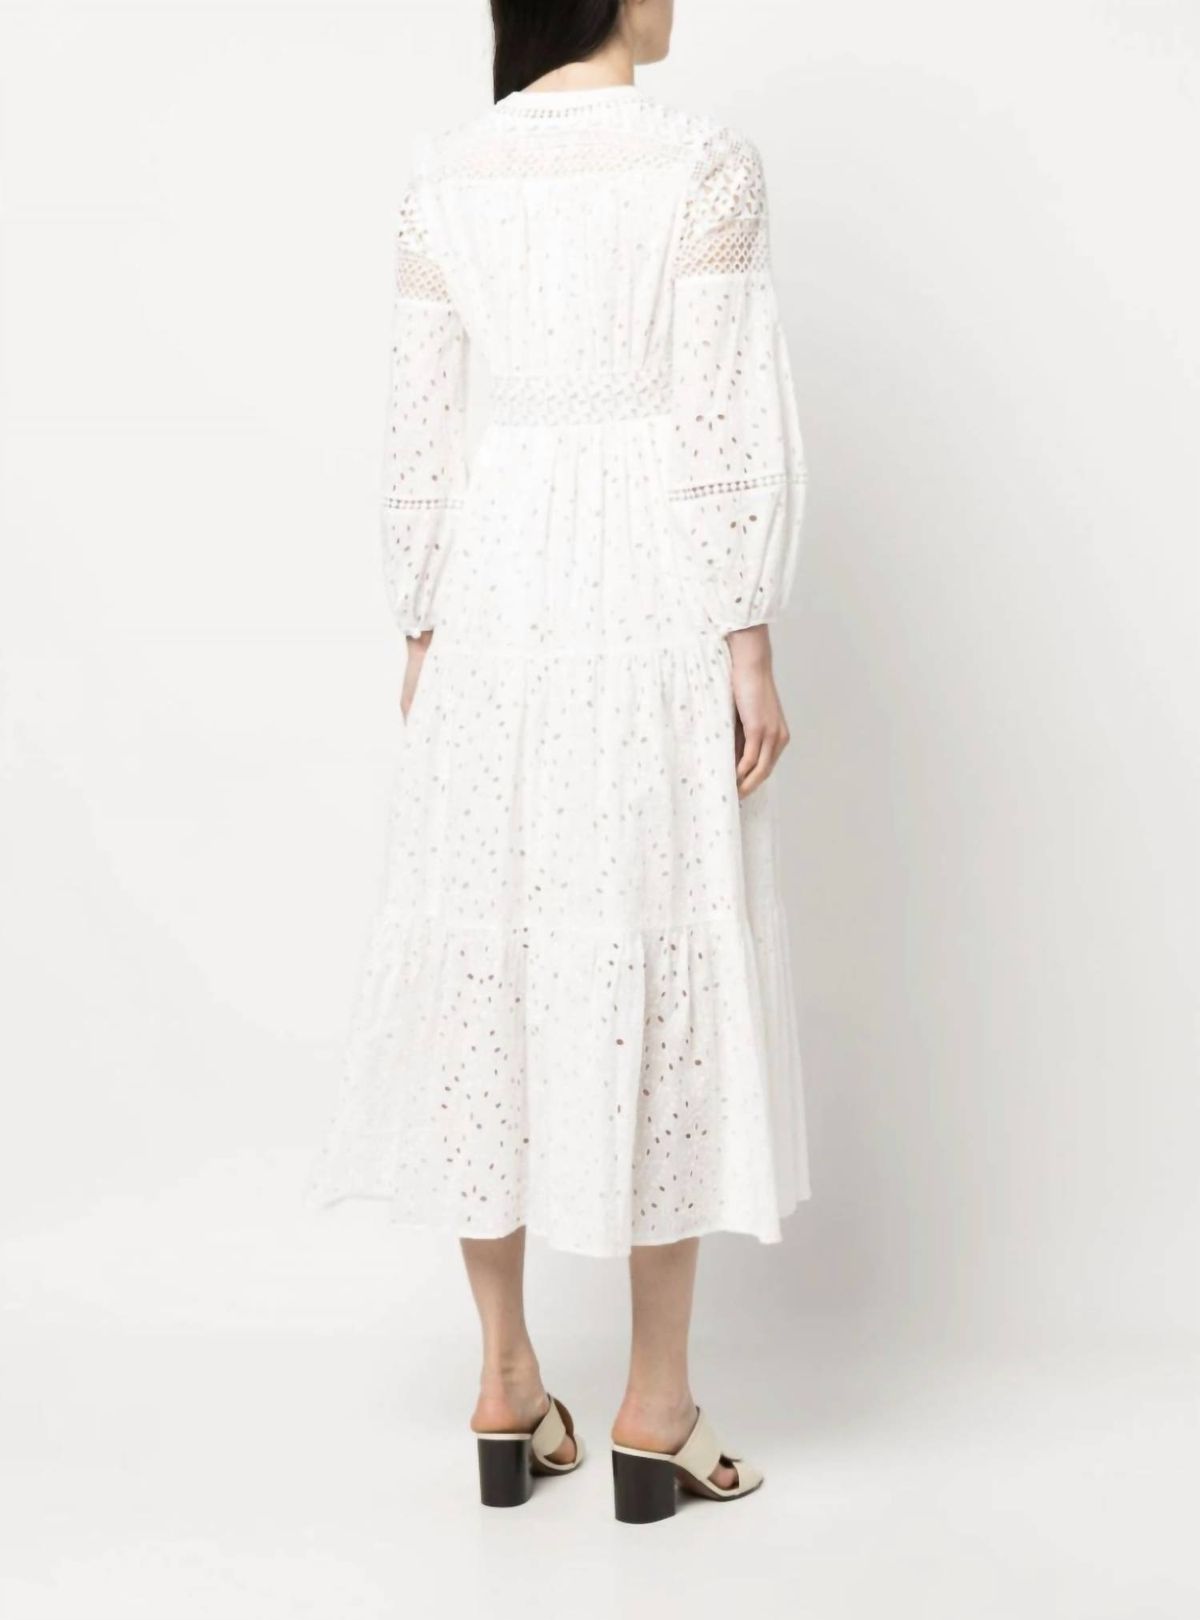 Style 1-1580596419-2168 Diane von Furstenberg Size 8 Sheer White Cocktail Dress on Queenly